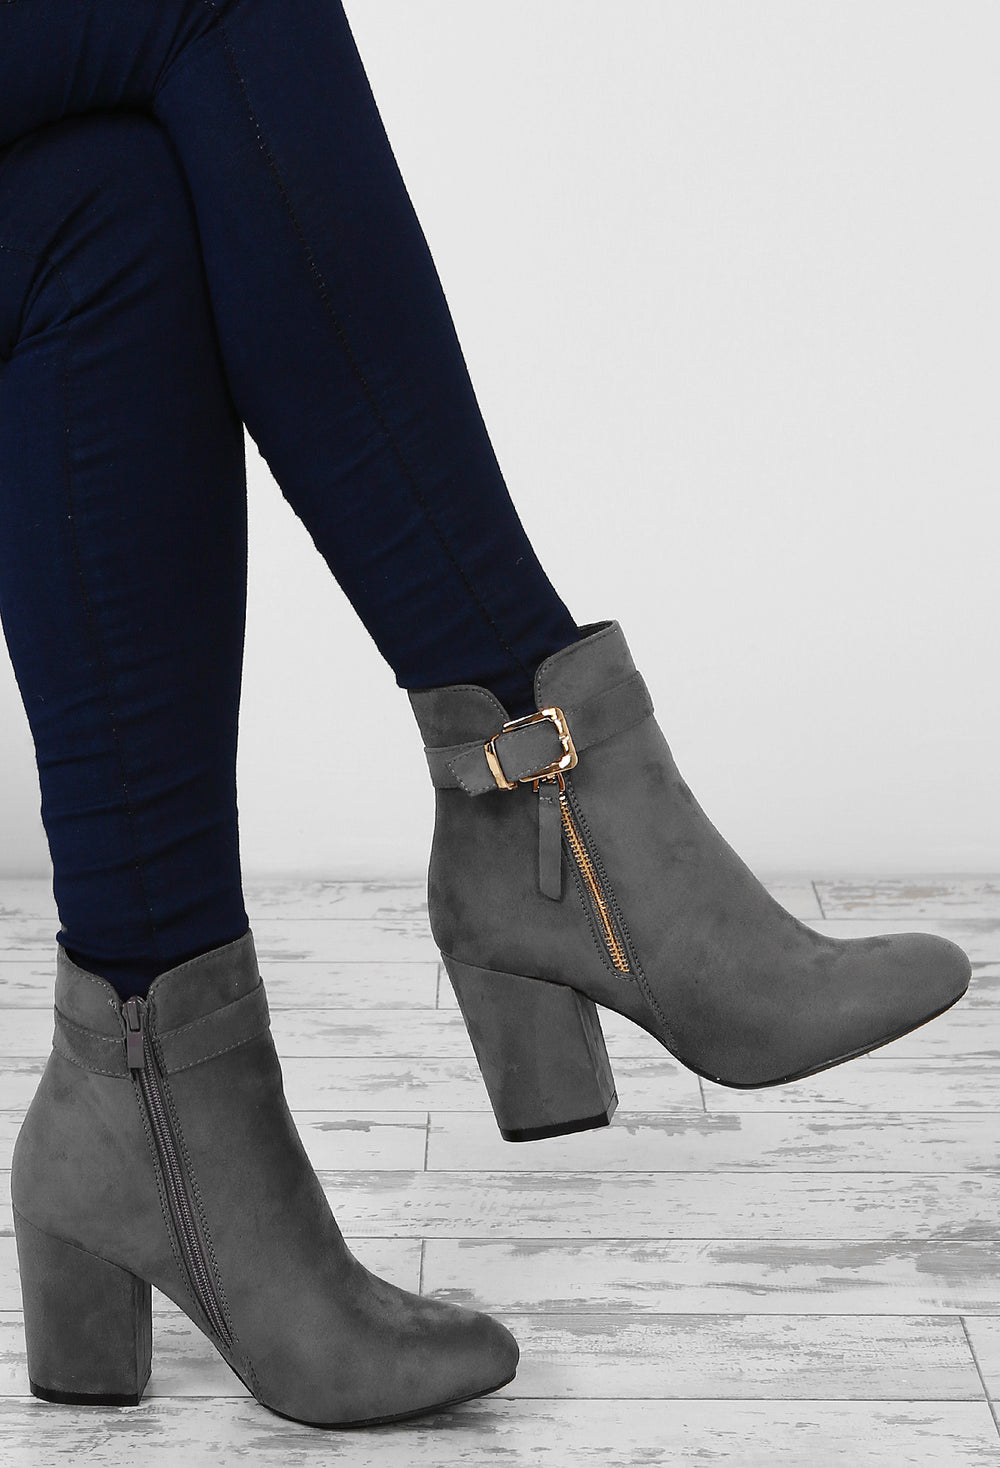 gray block heel booties